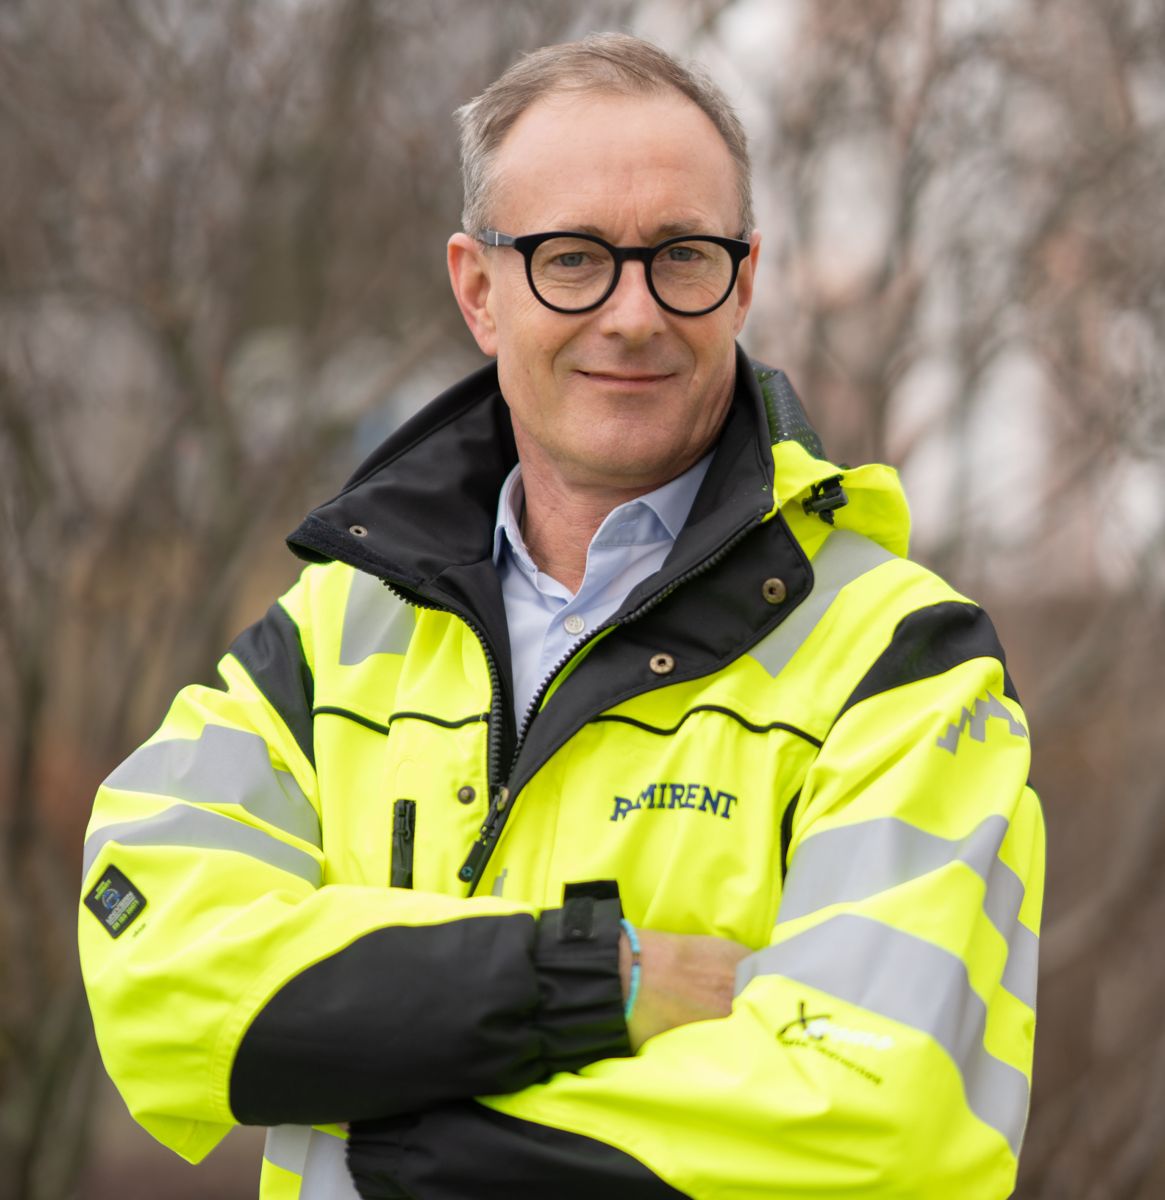 Administrerende direktør Fredrik Brandal sier at han er stolt over innsatsen til alle ansatte. Foto: Ramirent